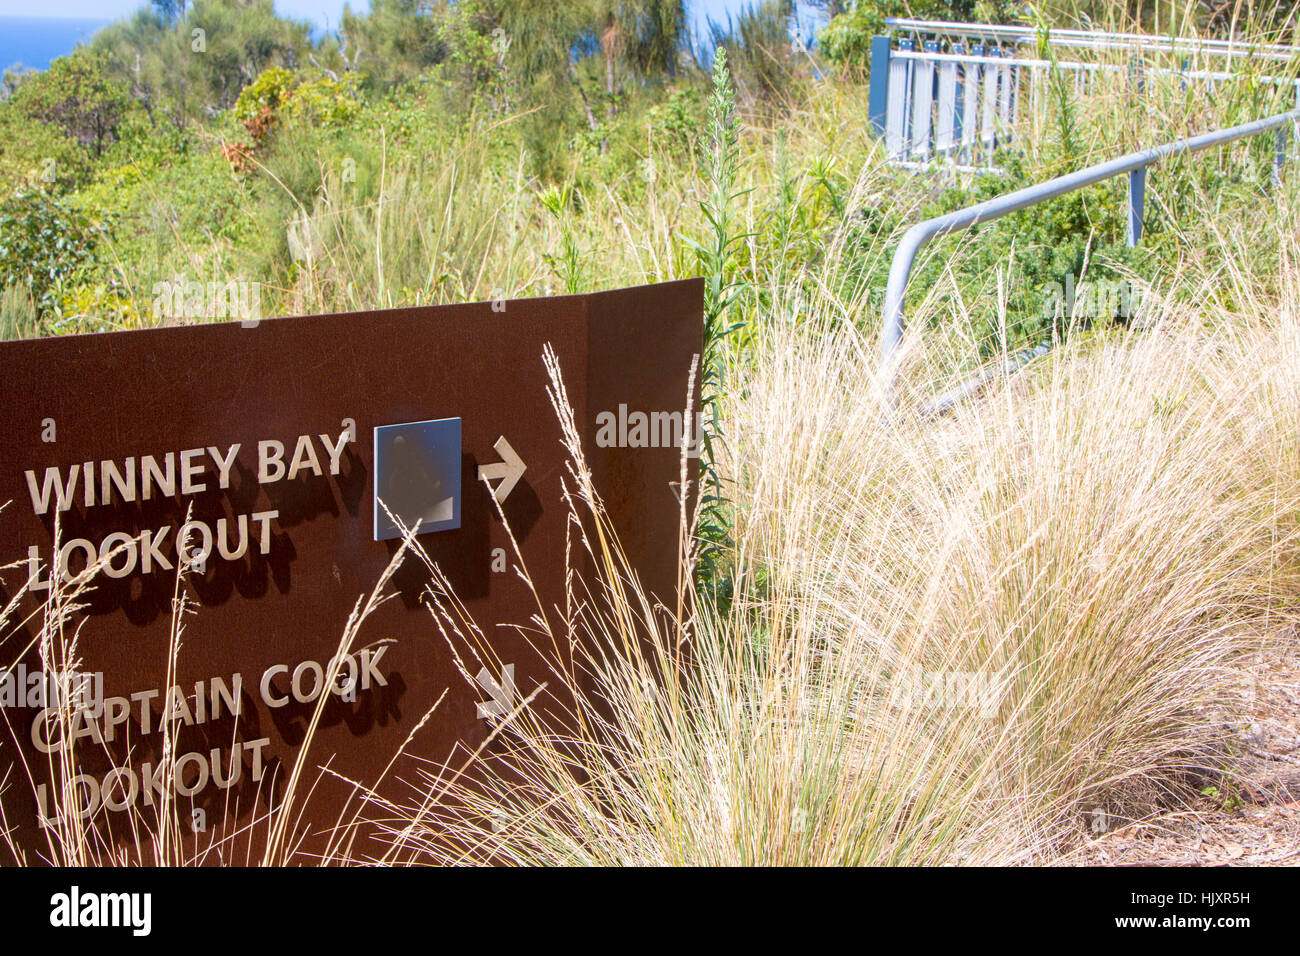 WINNEY Bay und Captain Cook Lookout Punkte, zentralen Küste von New South Wales, Australien Stockfoto